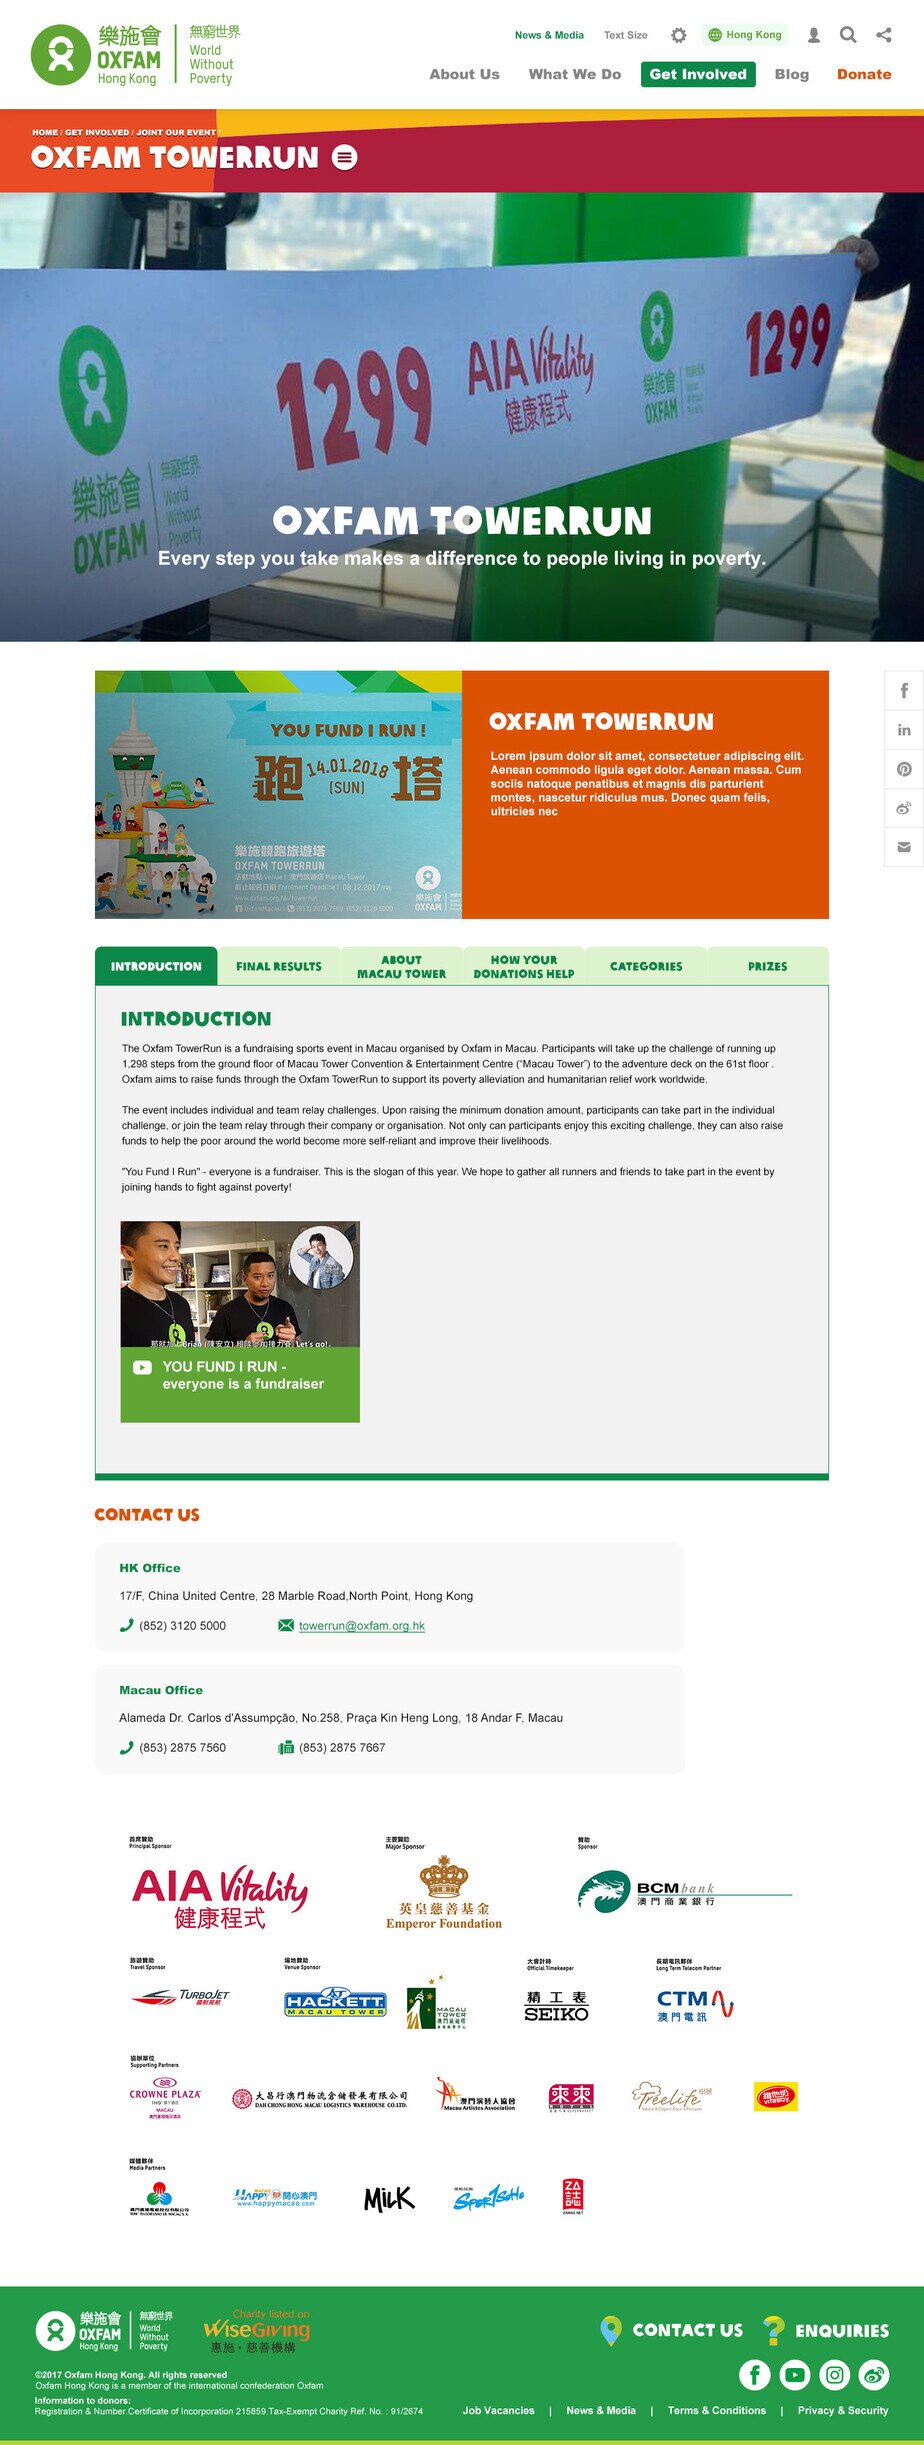 Oxfam Hong Kong website screenshot for desktop version 5 of 7